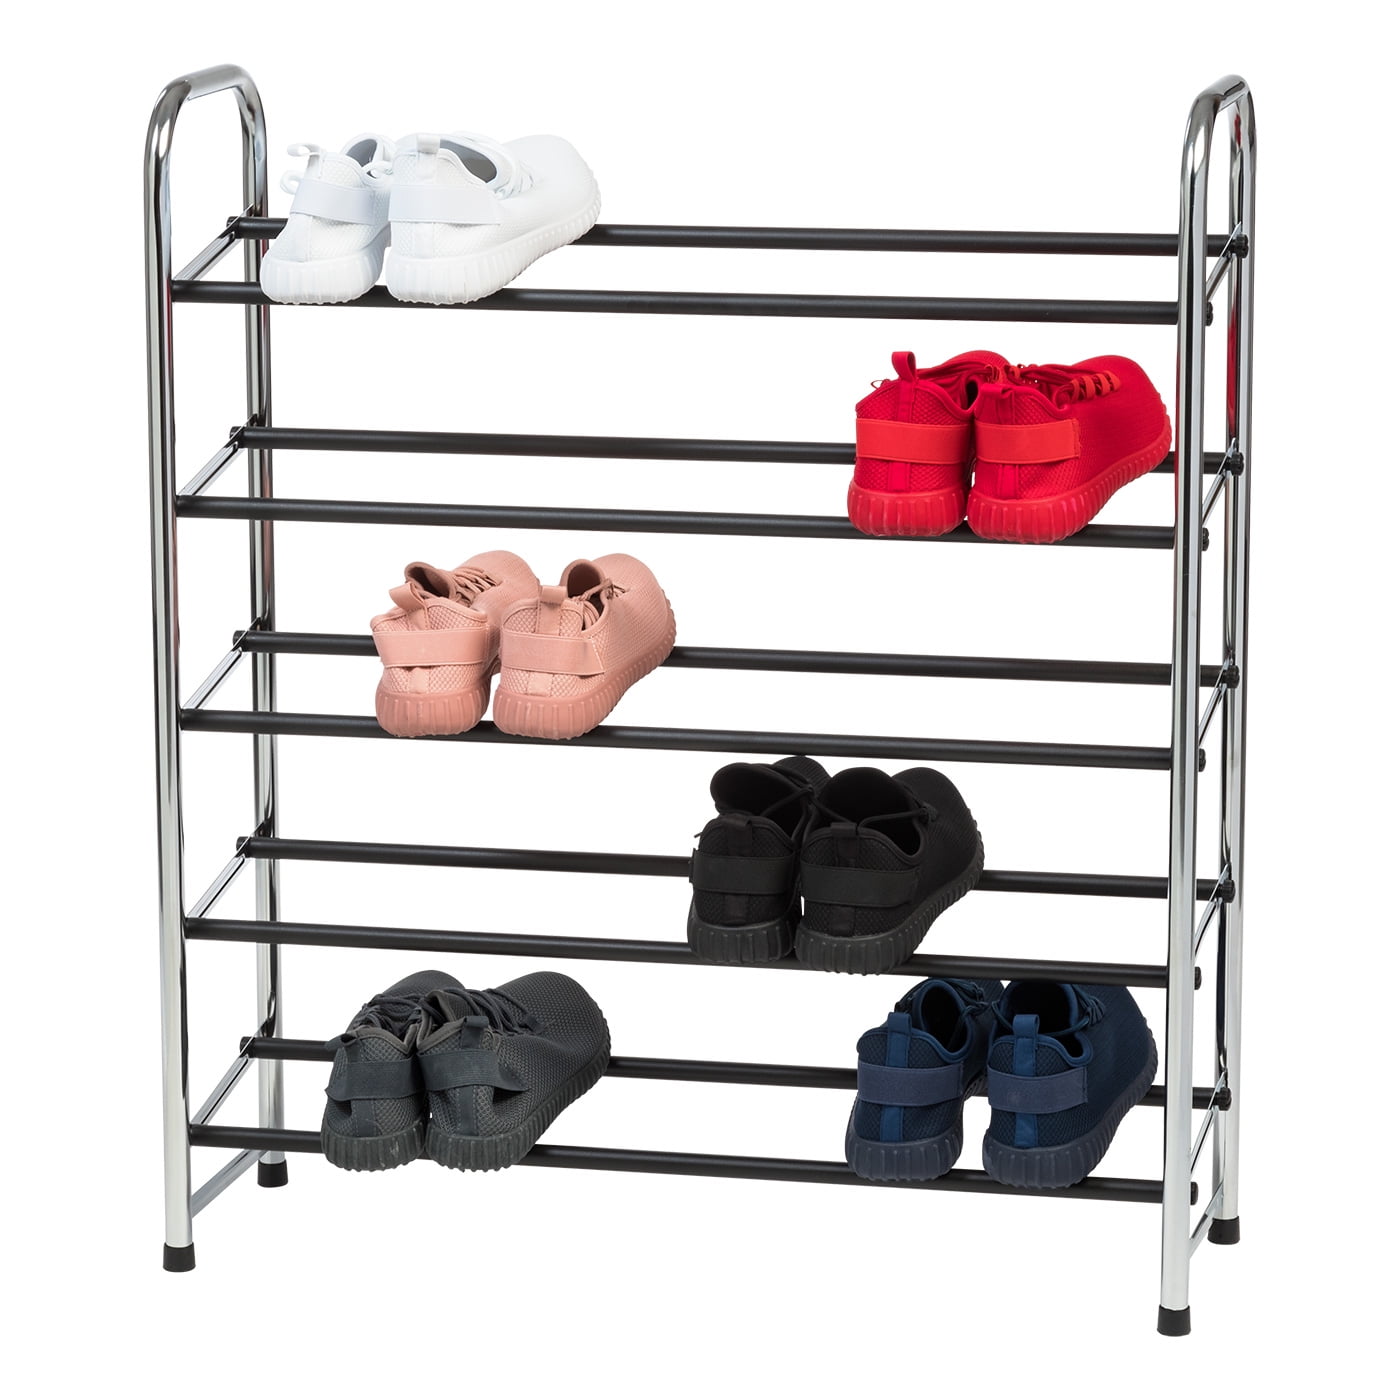 INGIORDAR Shoe Rack Organizer 5 Tier Metal Organizer Shelf with